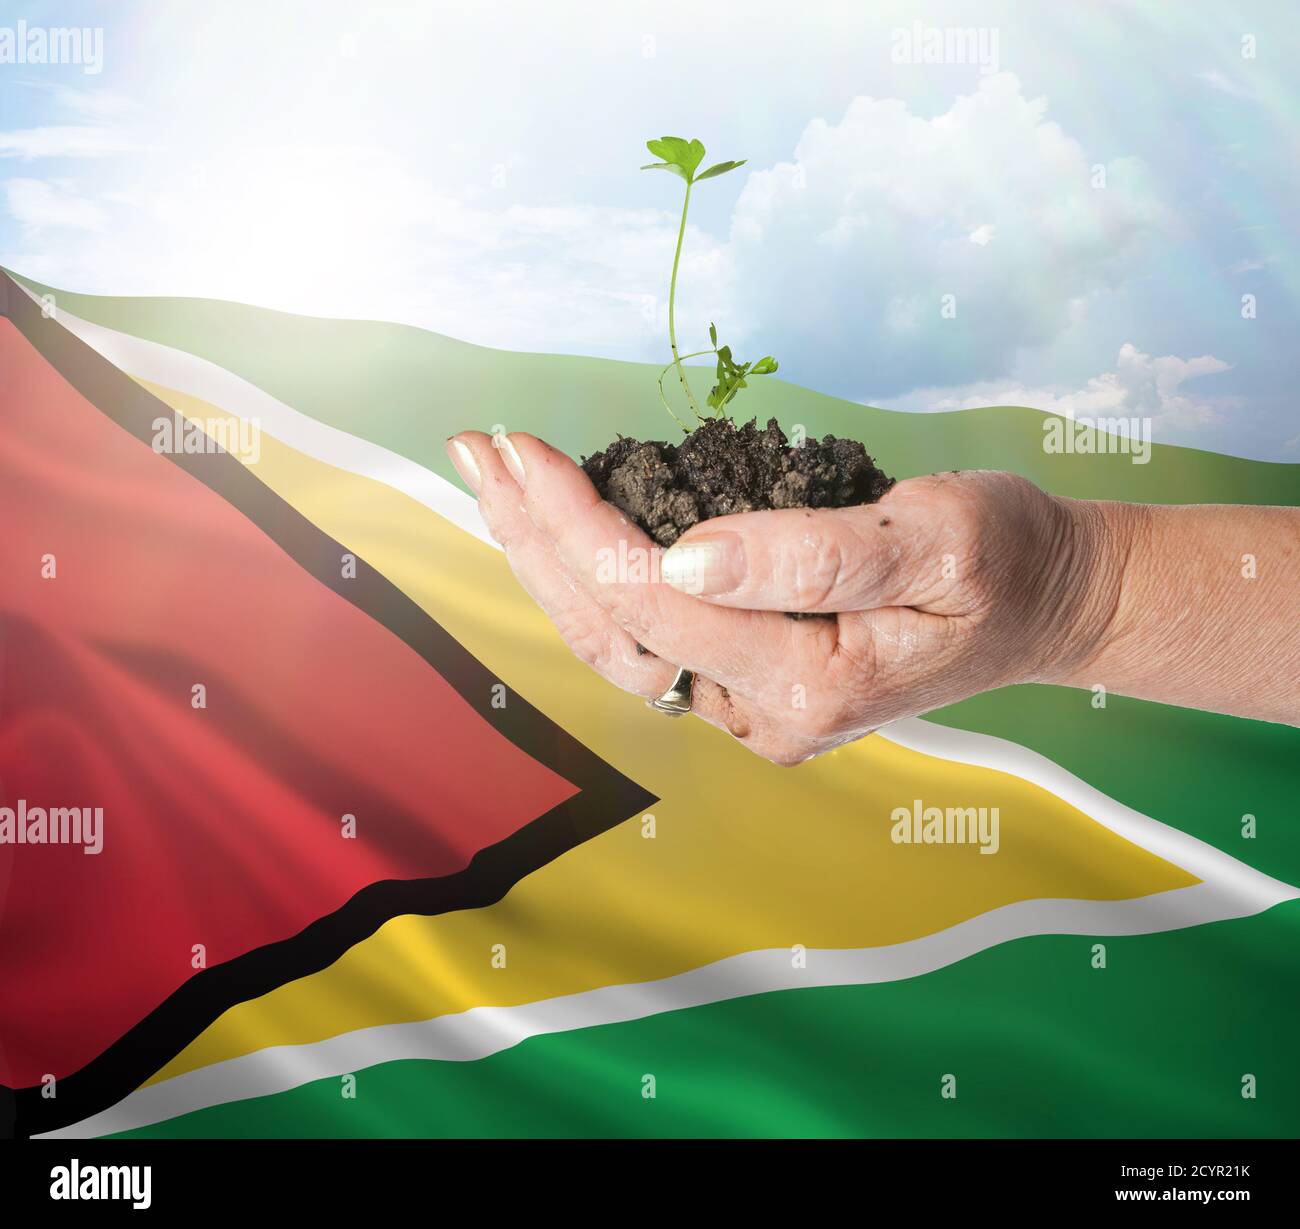 Guyana crecimiento y nuevo comienzo. Concepto de energía renovable verde y ecología. Mano sosteniendo planta joven. Foto de stock